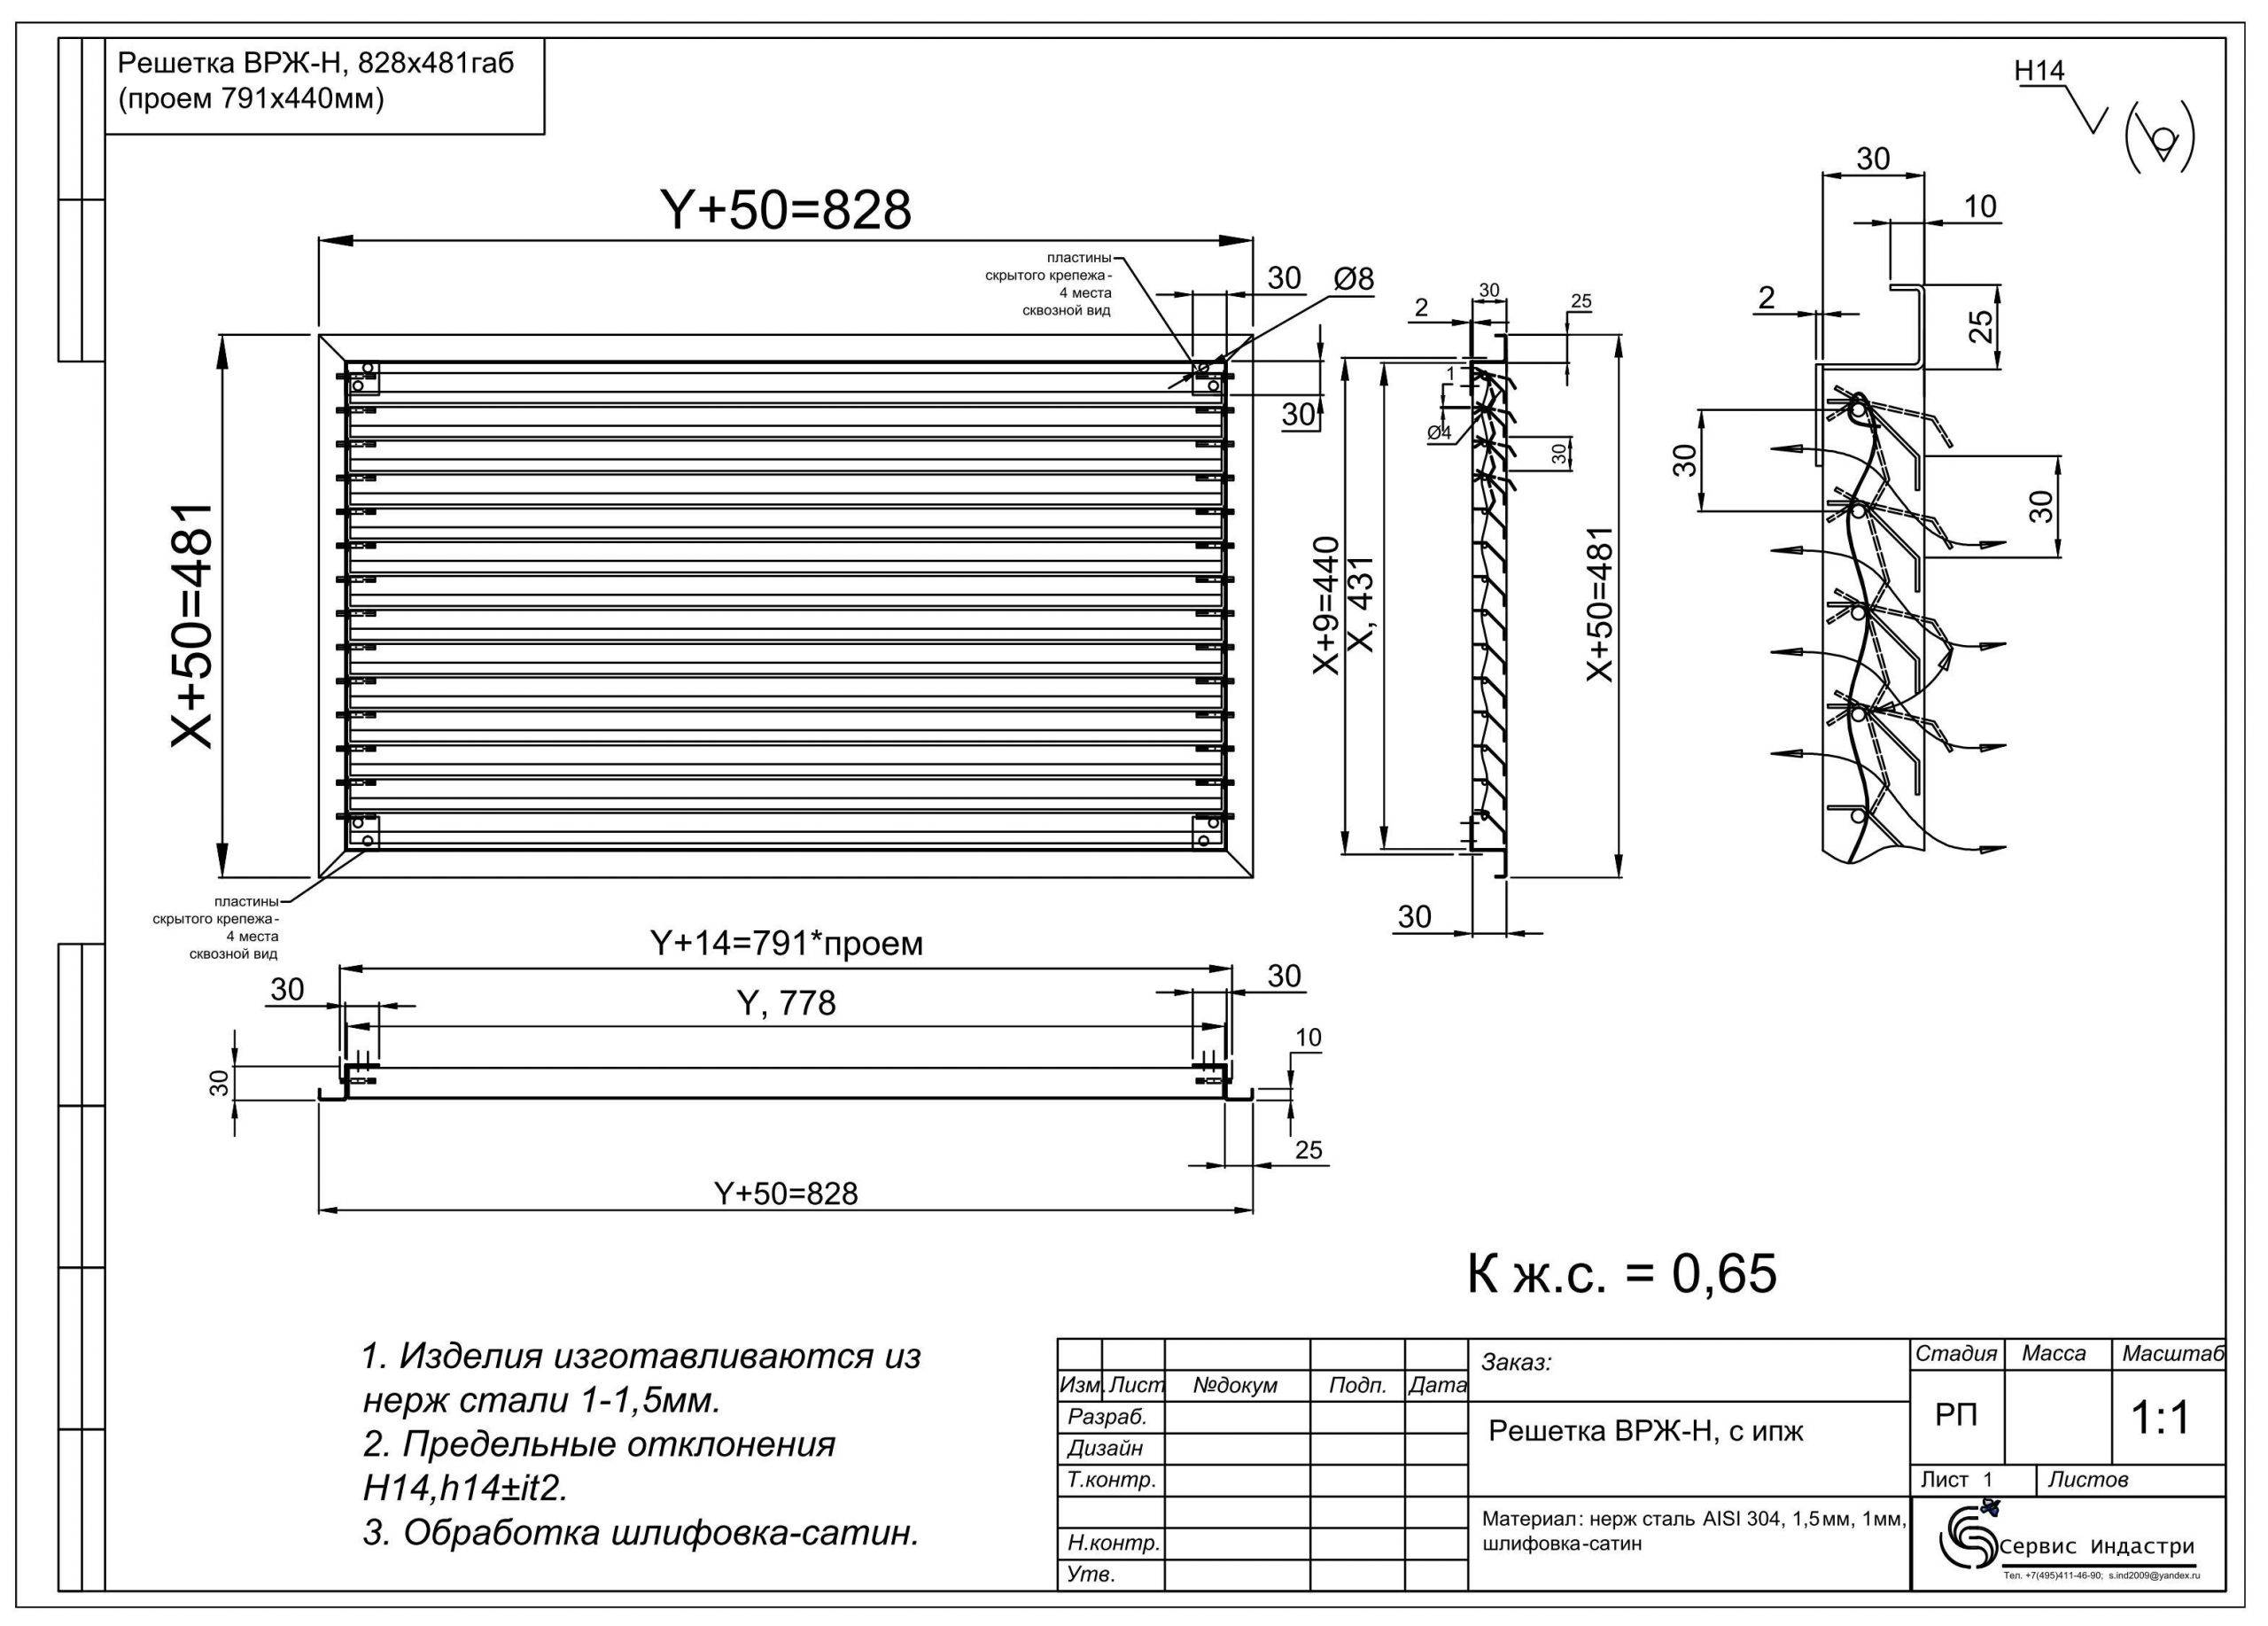 Вентиляционные решетки наружные металлические фасадные — инструкция пошагово!